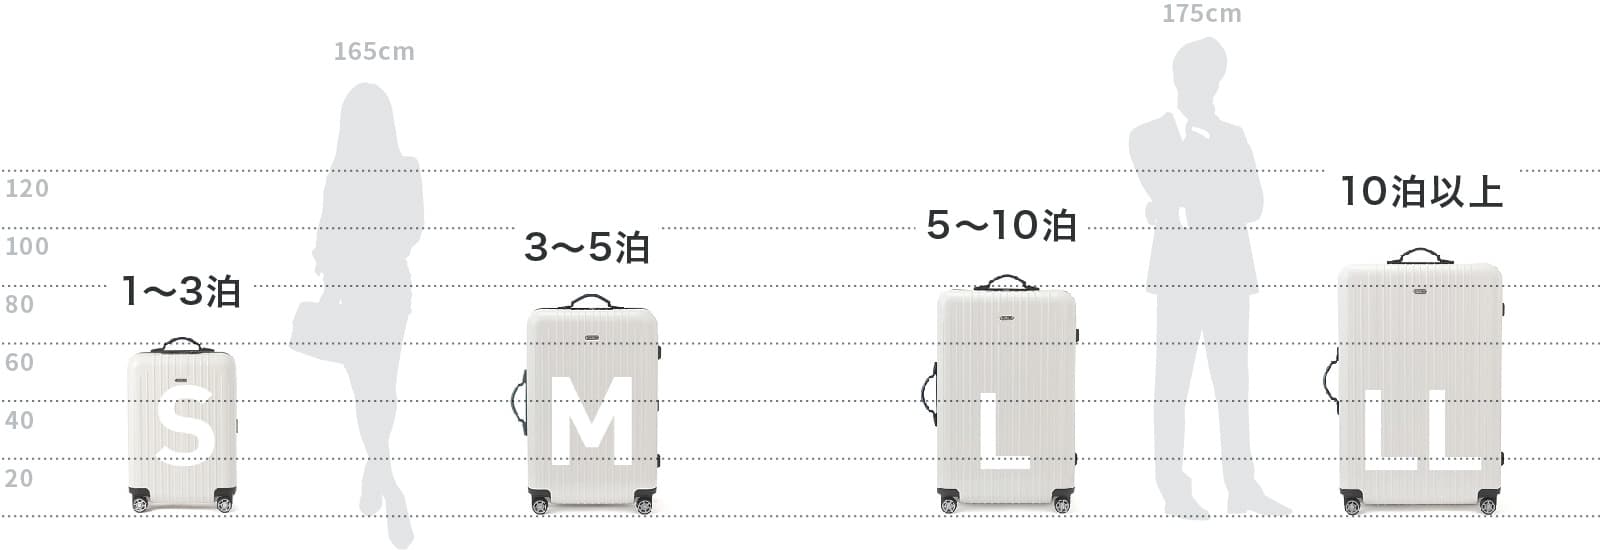 スーツケースサイズ表